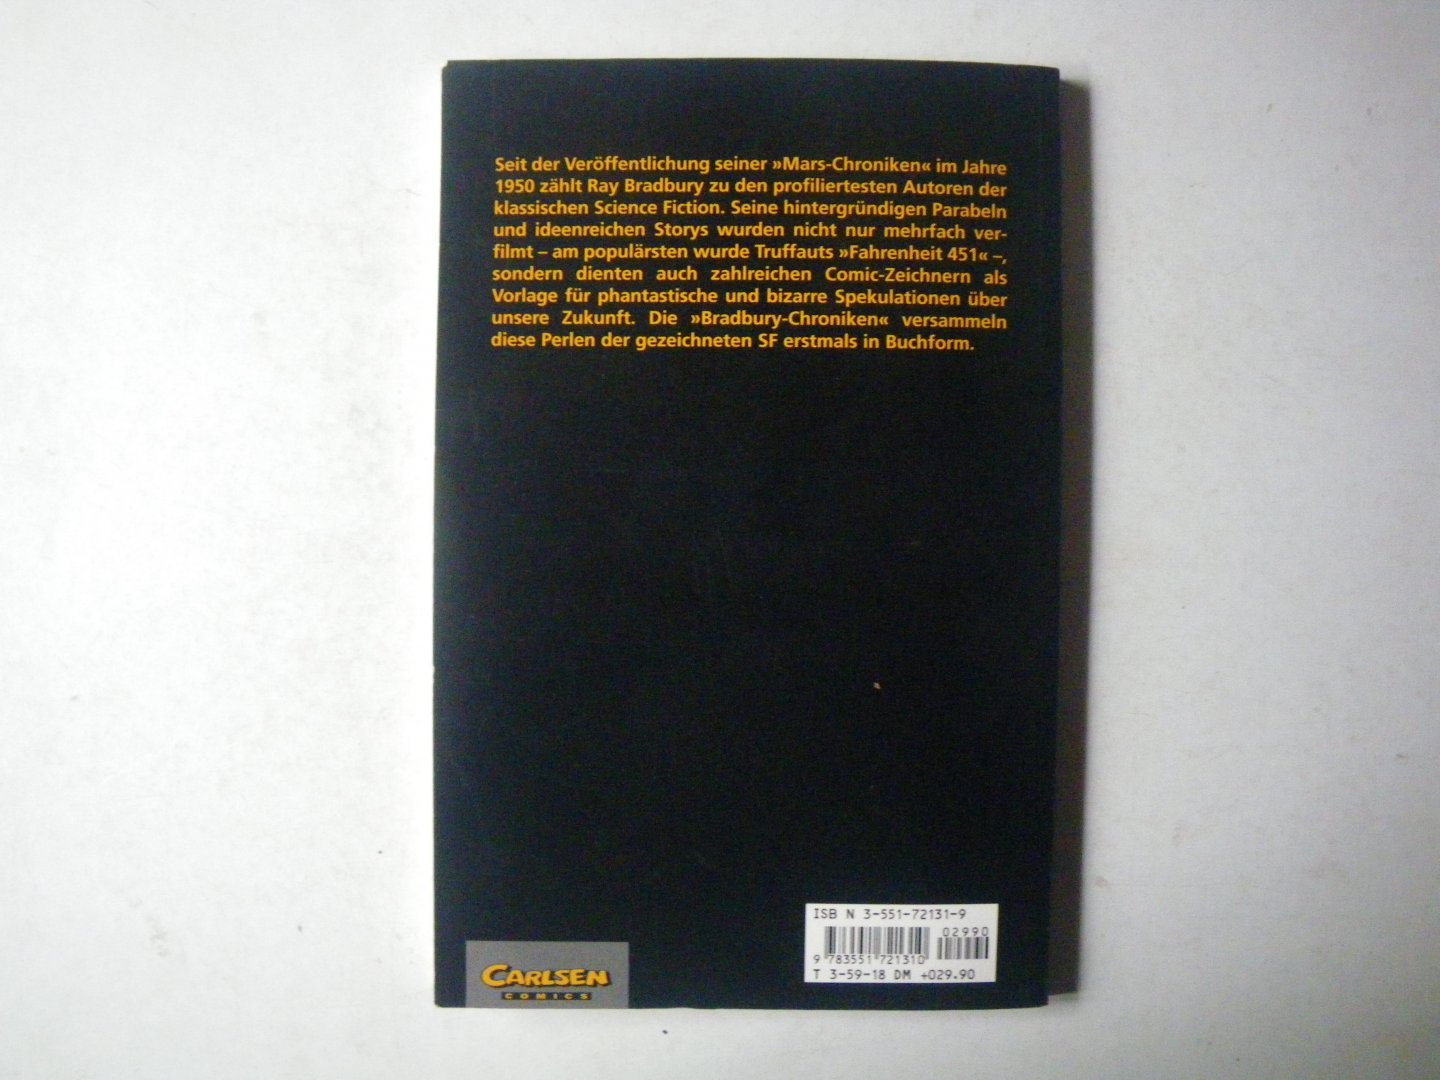 Ray Bradbury (Autor), Kent Williams (Autor), P. C. Russell (Autor), Ralph Reese (Autor) - Die Bradbury-Chroniken, Bd.1